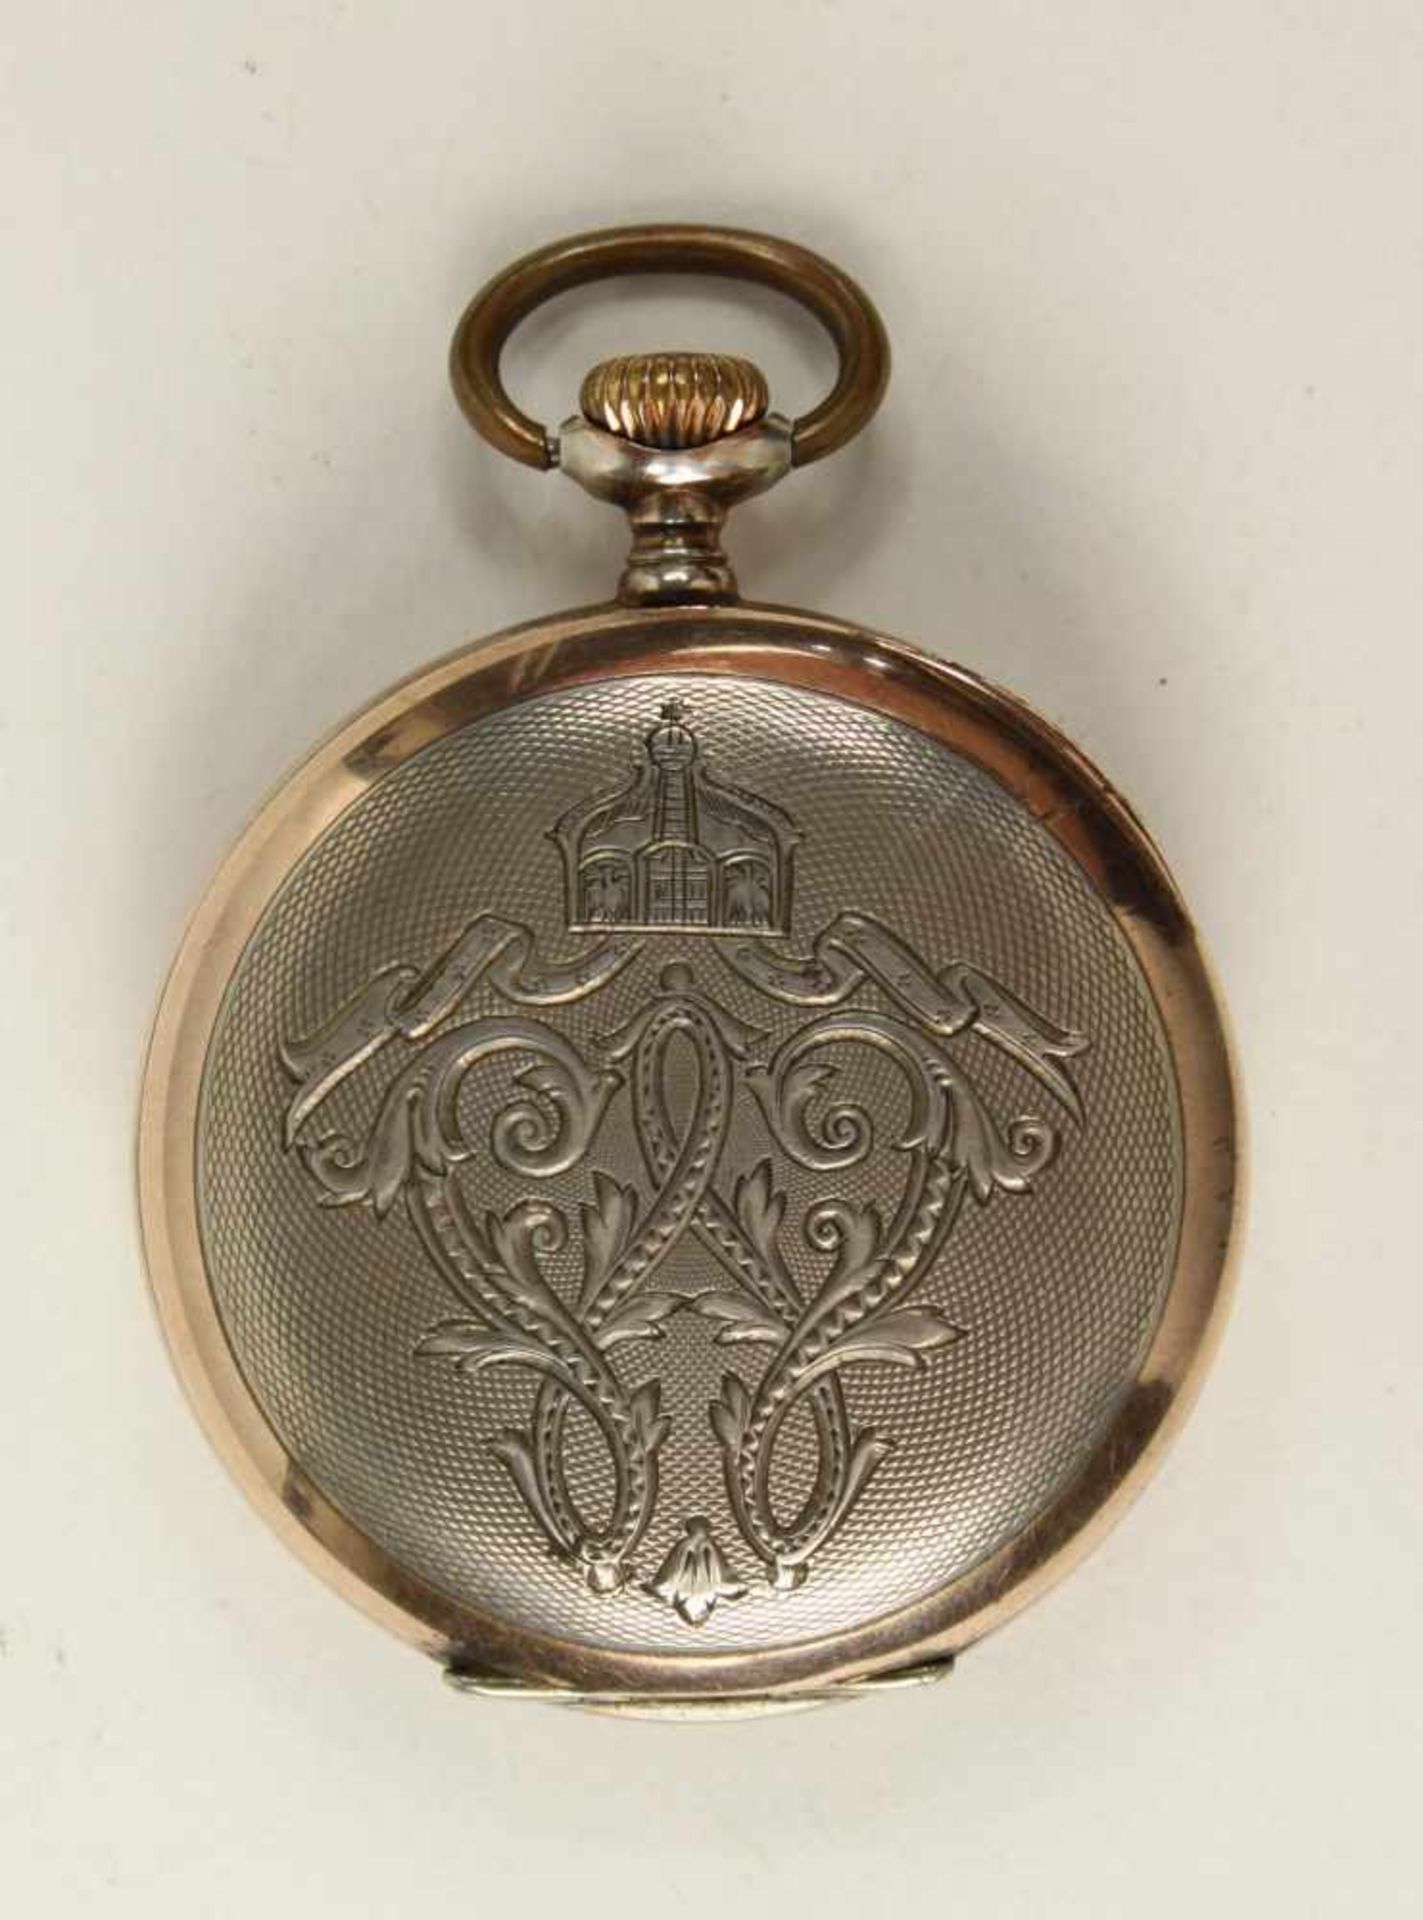 Geschenkuhr Kaiser Wilhelm II.,Marke "Longines", Silber "800", weißes Zifferblatt mit arabischen